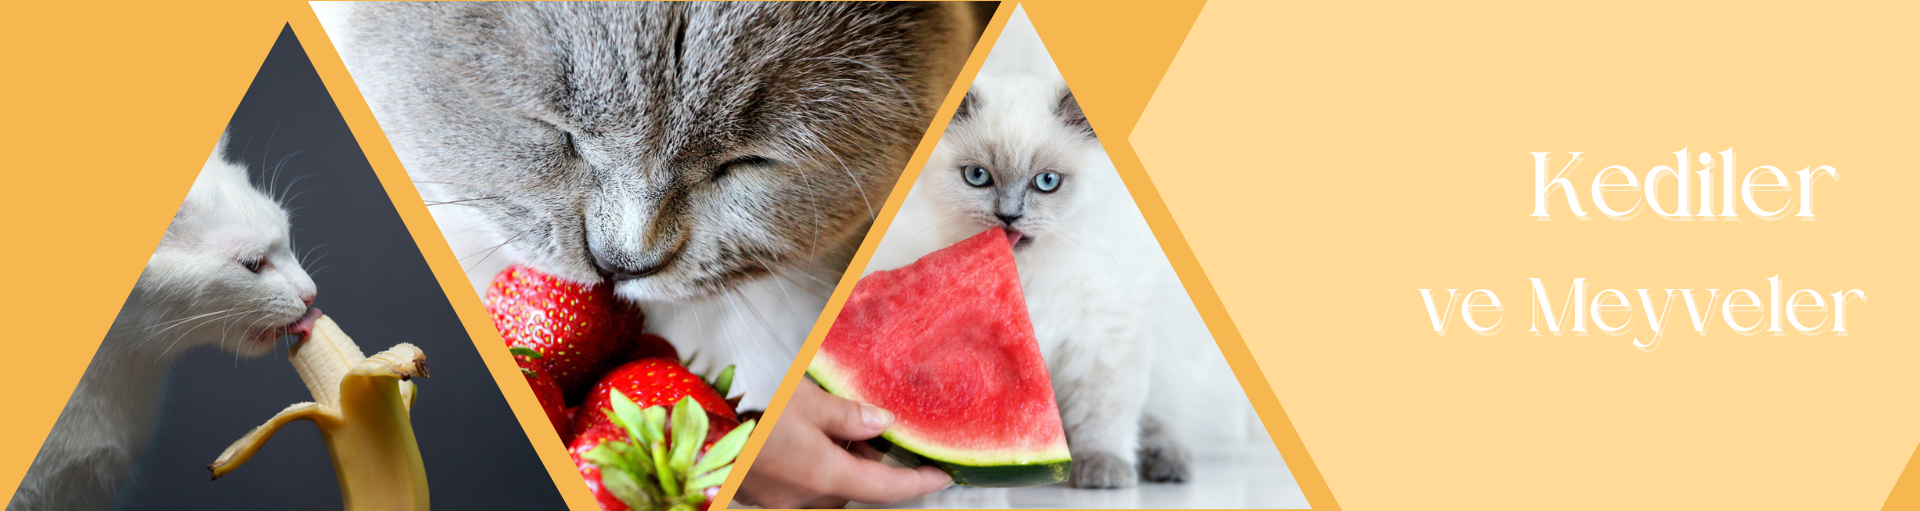 Kediler ve Meyveler: İlişkileri ve Güvenli Seçenekler